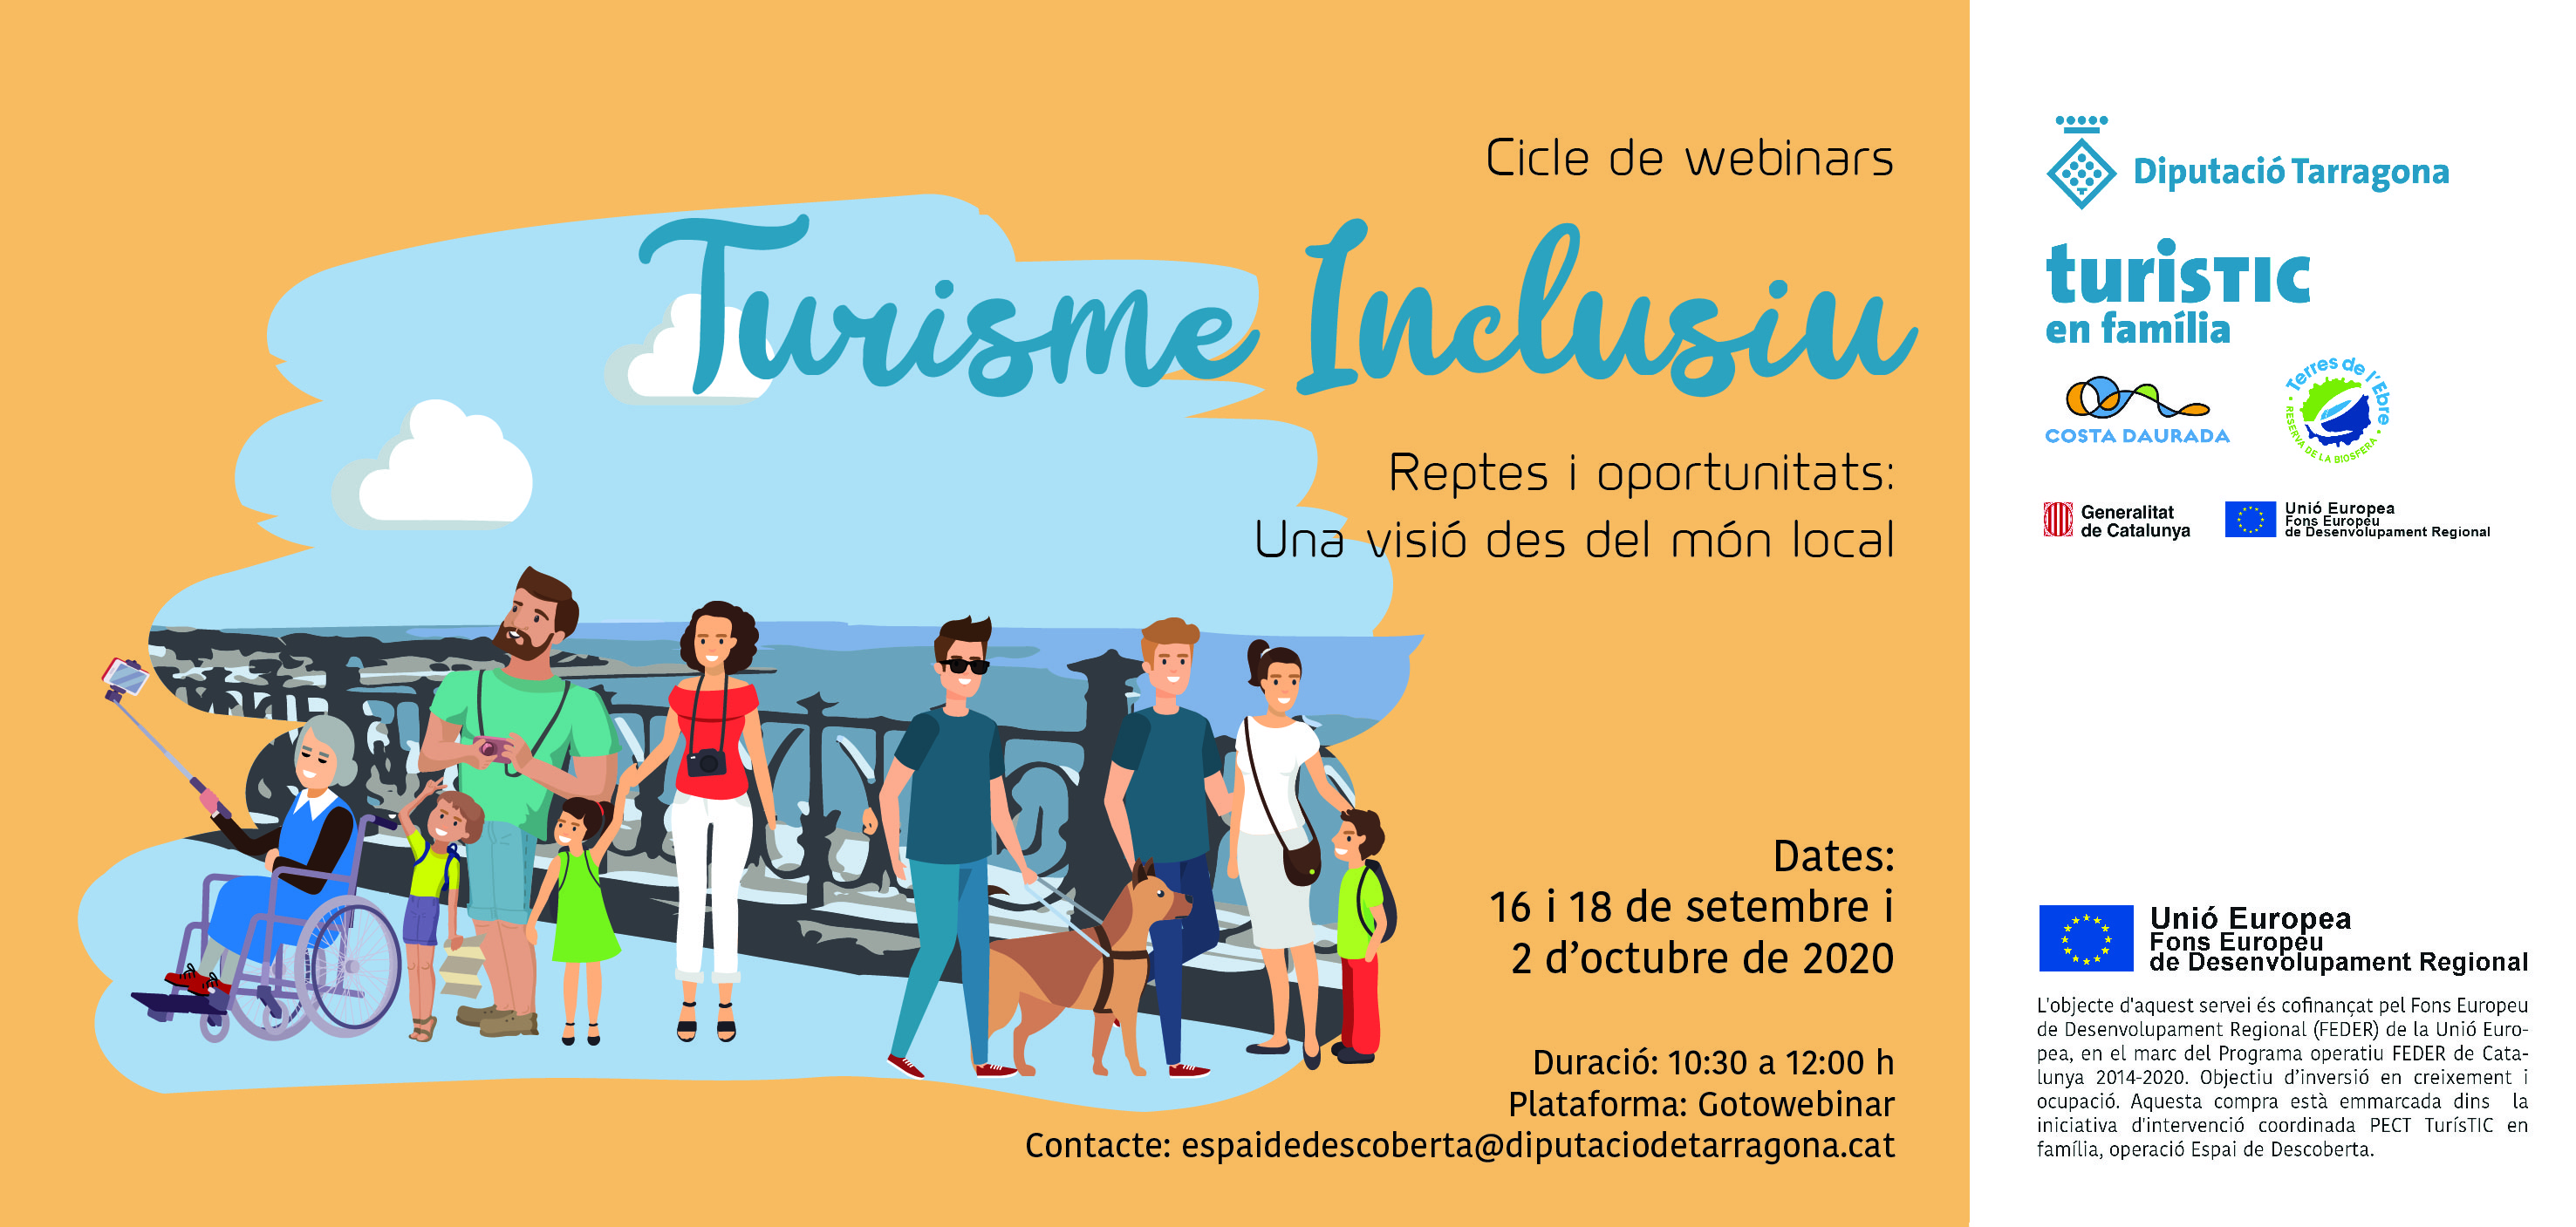 Continua el cicle de Turisme Inclusiu amb dues noves trobades virtuals adreçades a empreses privades del sector